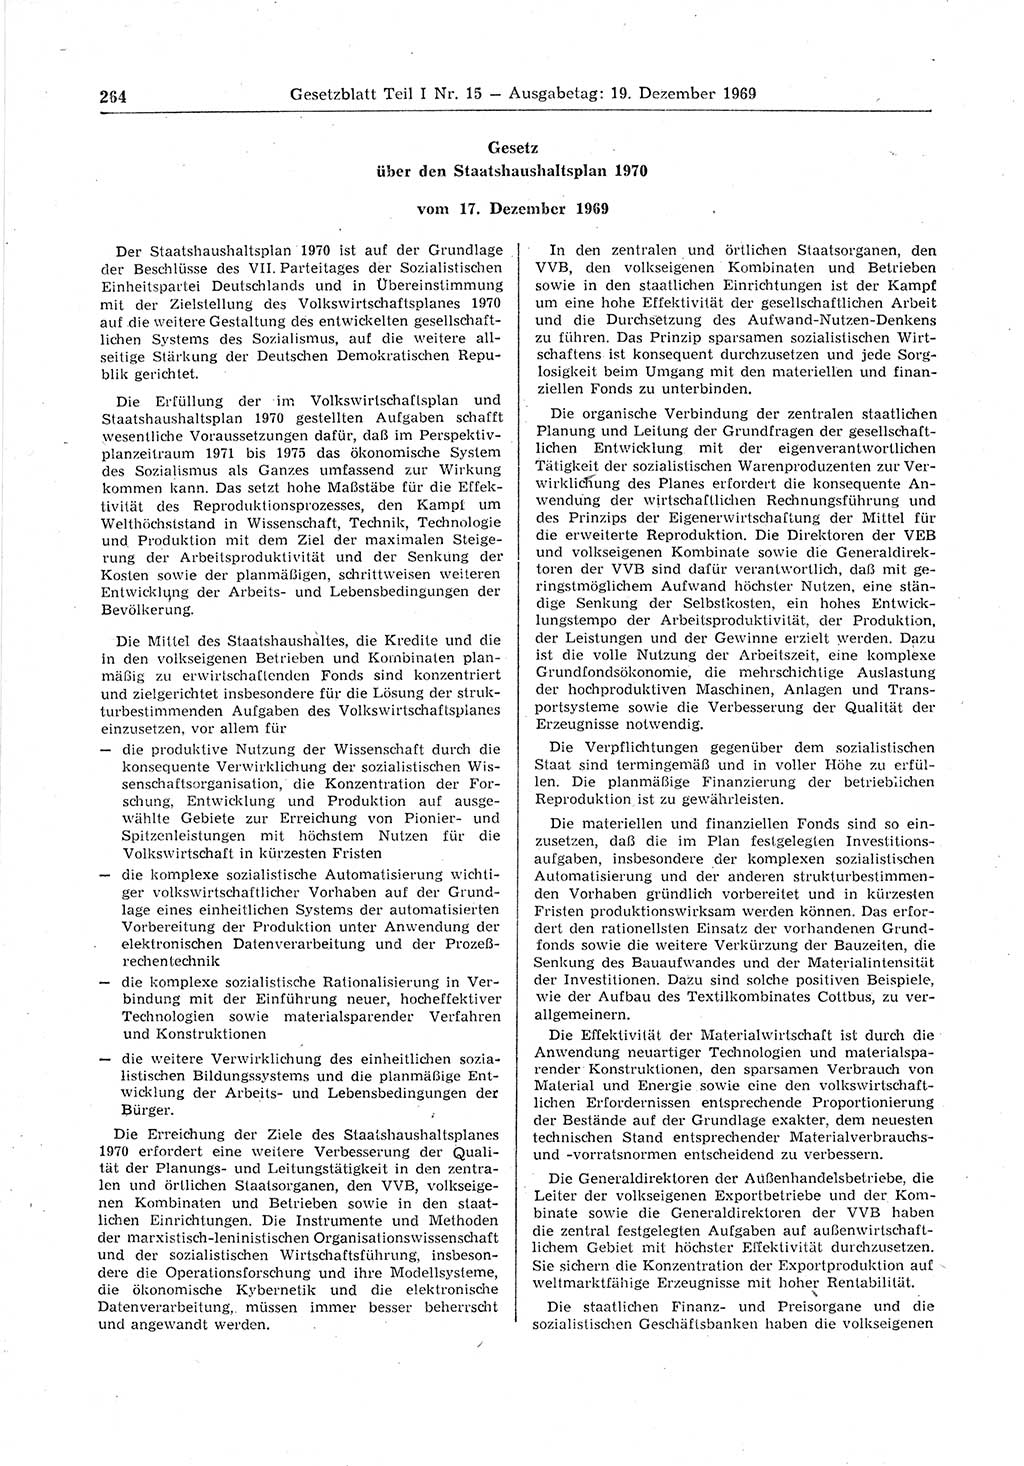 Gesetzblatt (GBl.) der Deutschen Demokratischen Republik (DDR) Teil Ⅰ 1969, Seite 264 (GBl. DDR Ⅰ 1969, S. 264)